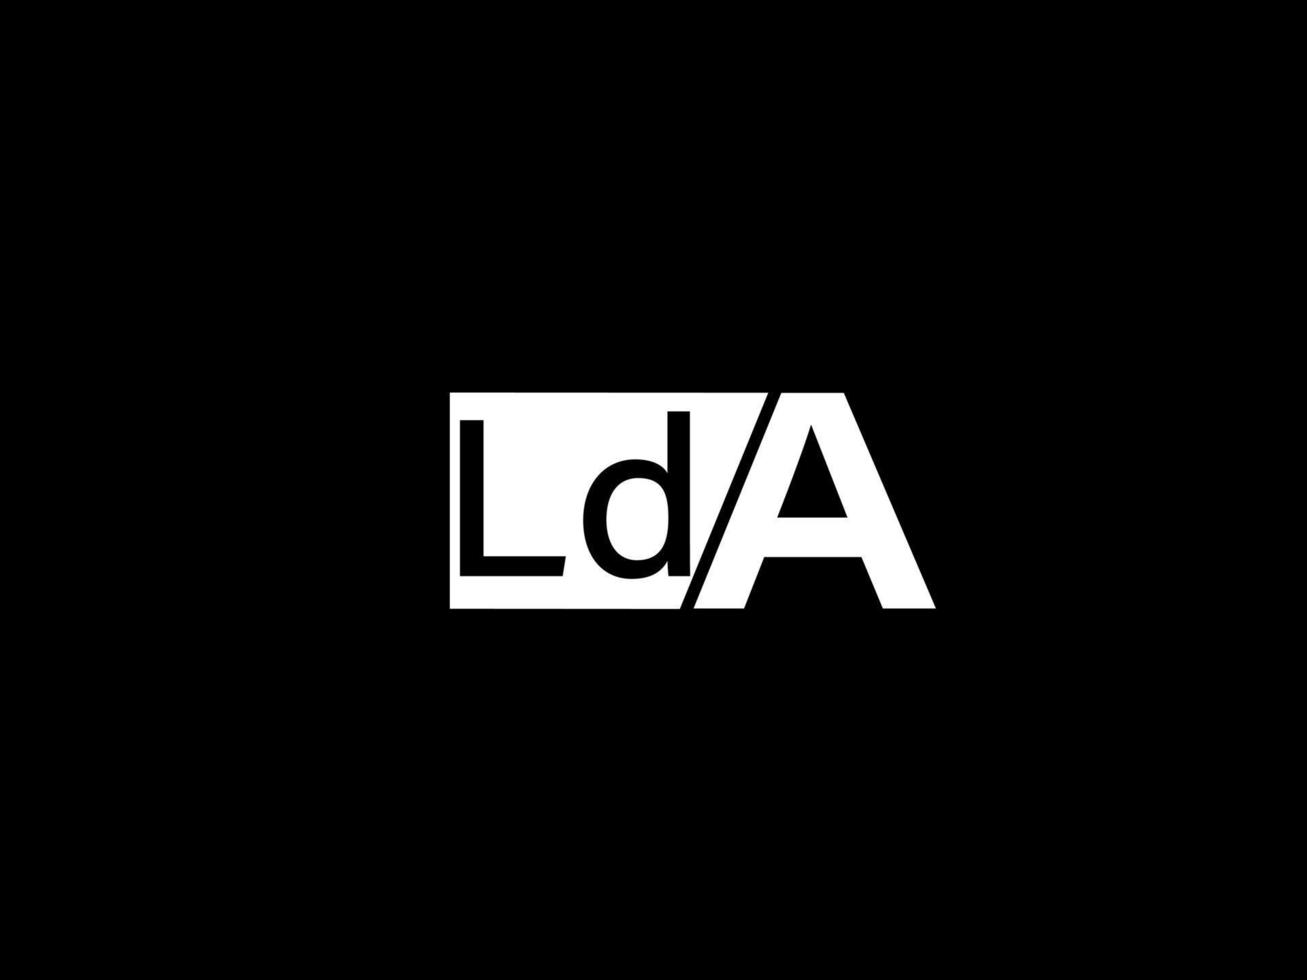 LDA-Logo und Grafikdesign Vektorgrafiken, Symbole isoliert auf schwarzem Hintergrund vektor